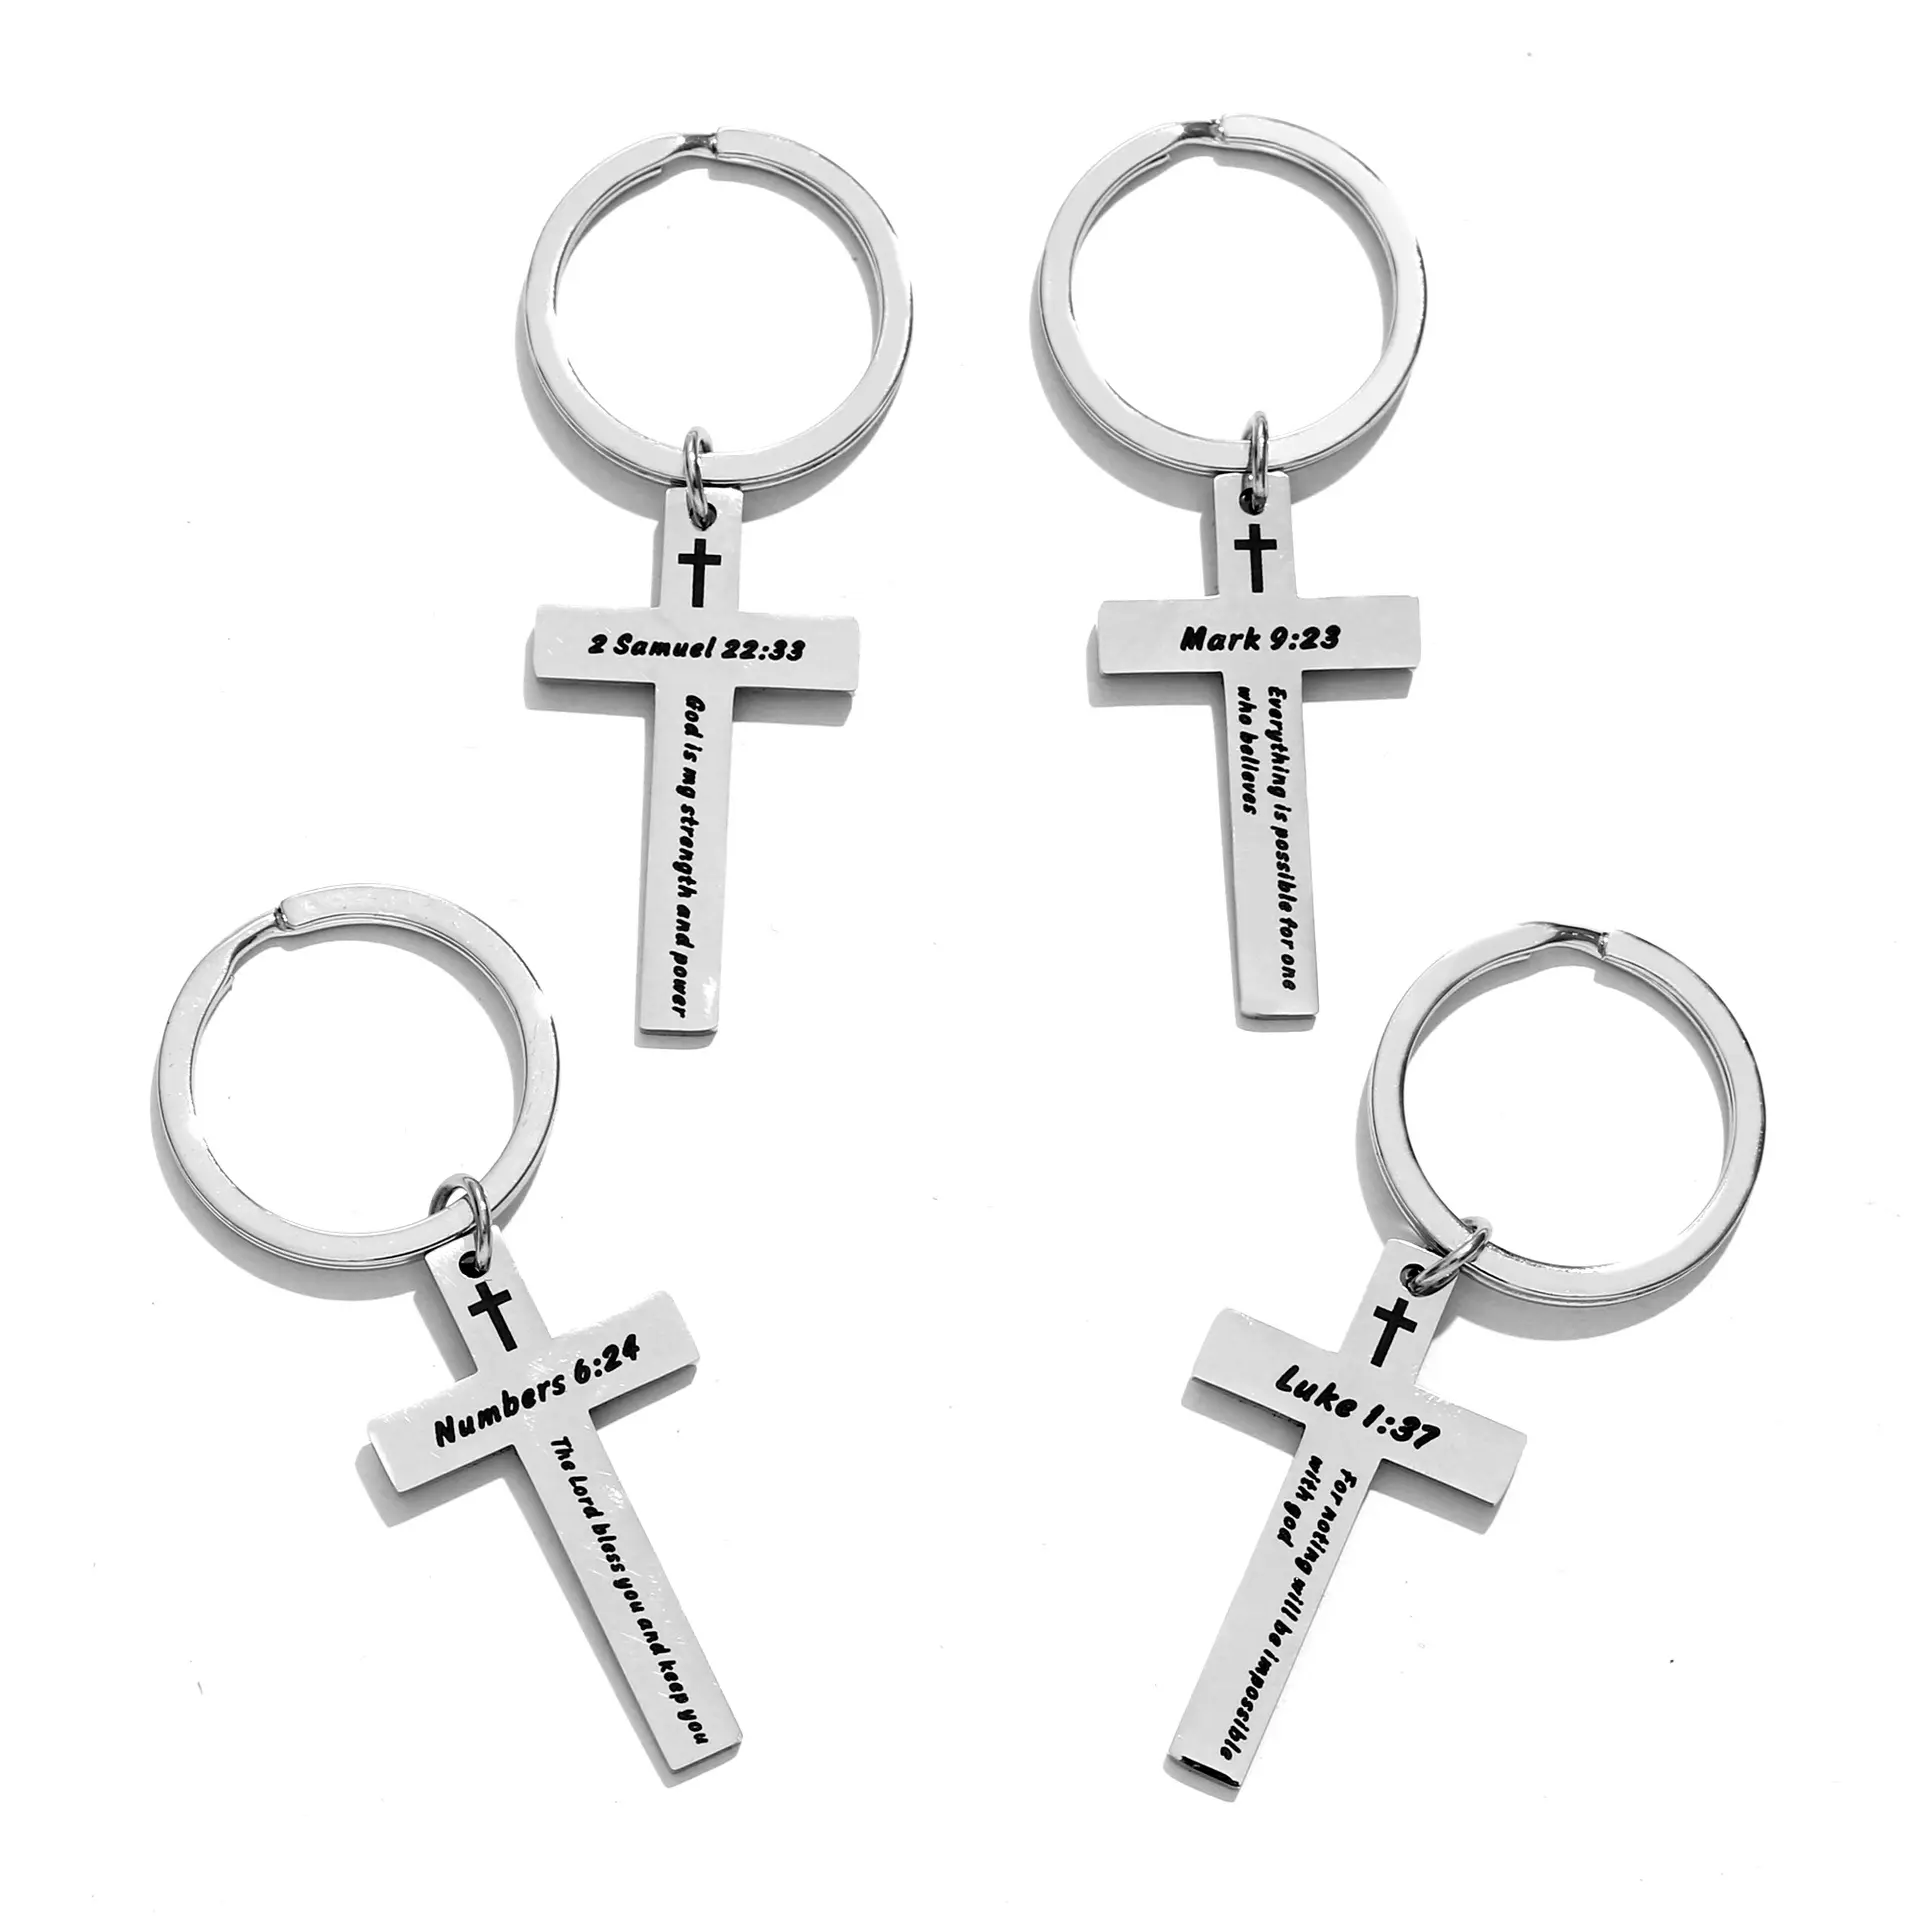 Kadınlar erkekler için hıristiyan hediyeler çapraz metal anahtar zincirleri İlham İncil Verse dini anahtarlıklar İncil Verse anahtarlık takı